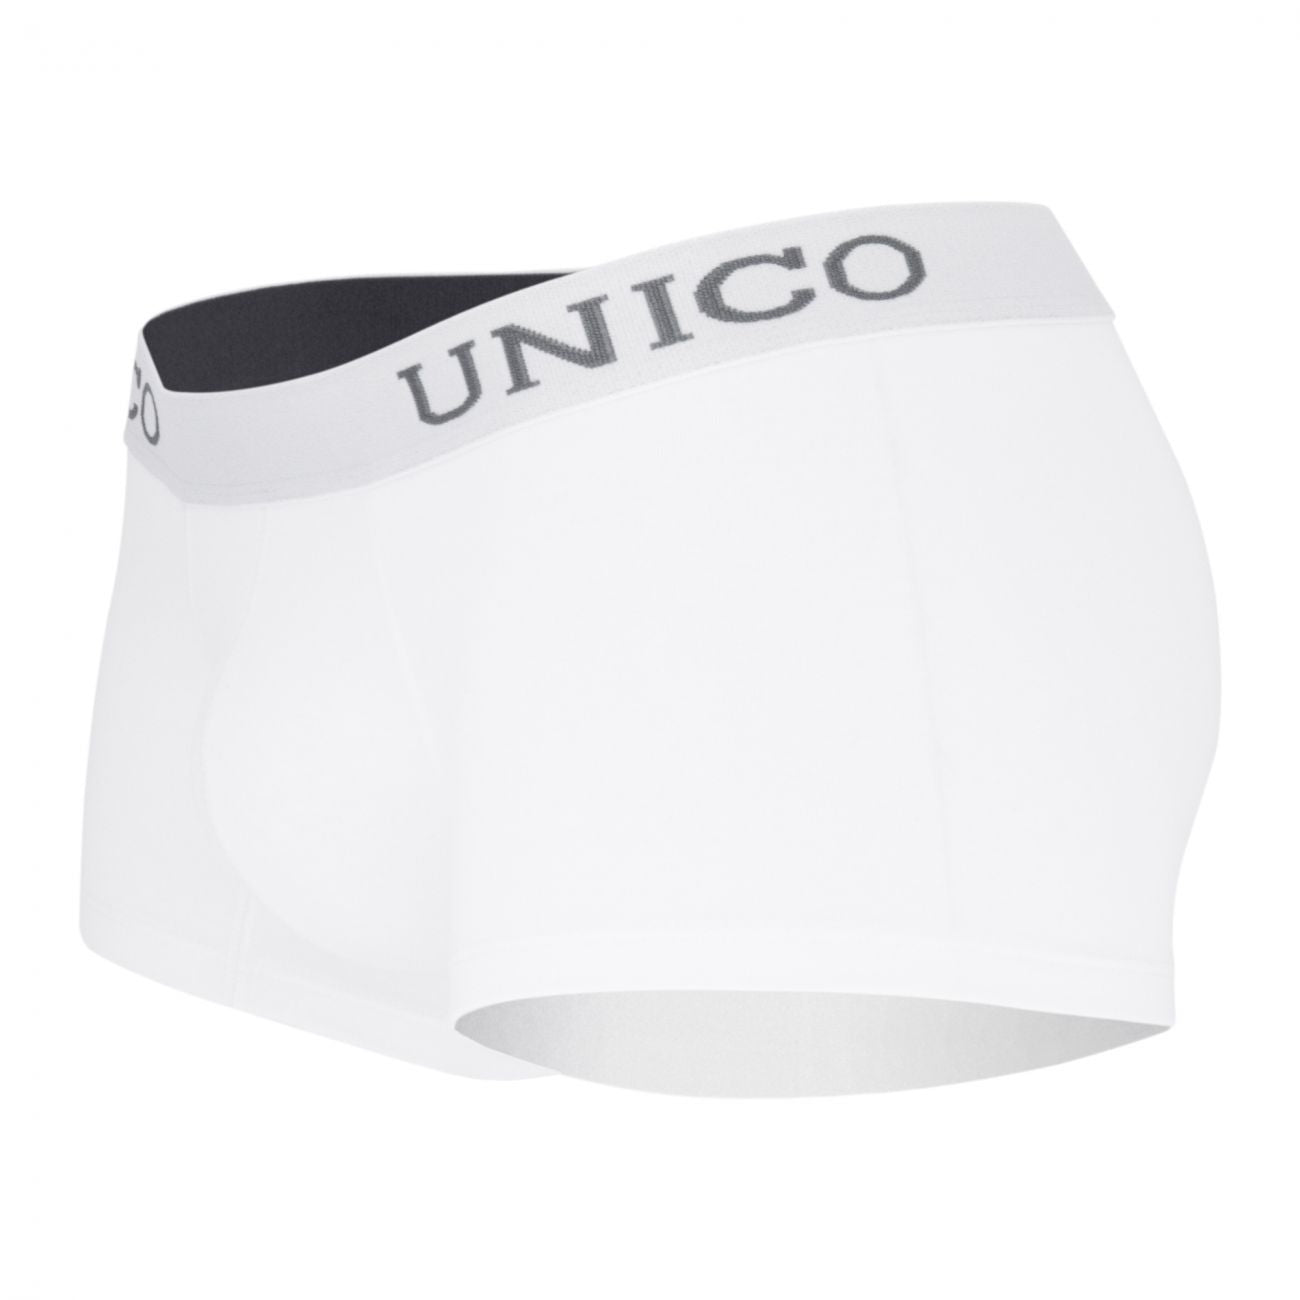 Unico (9612010010100) Boxer Briefs Cristalino Cotton